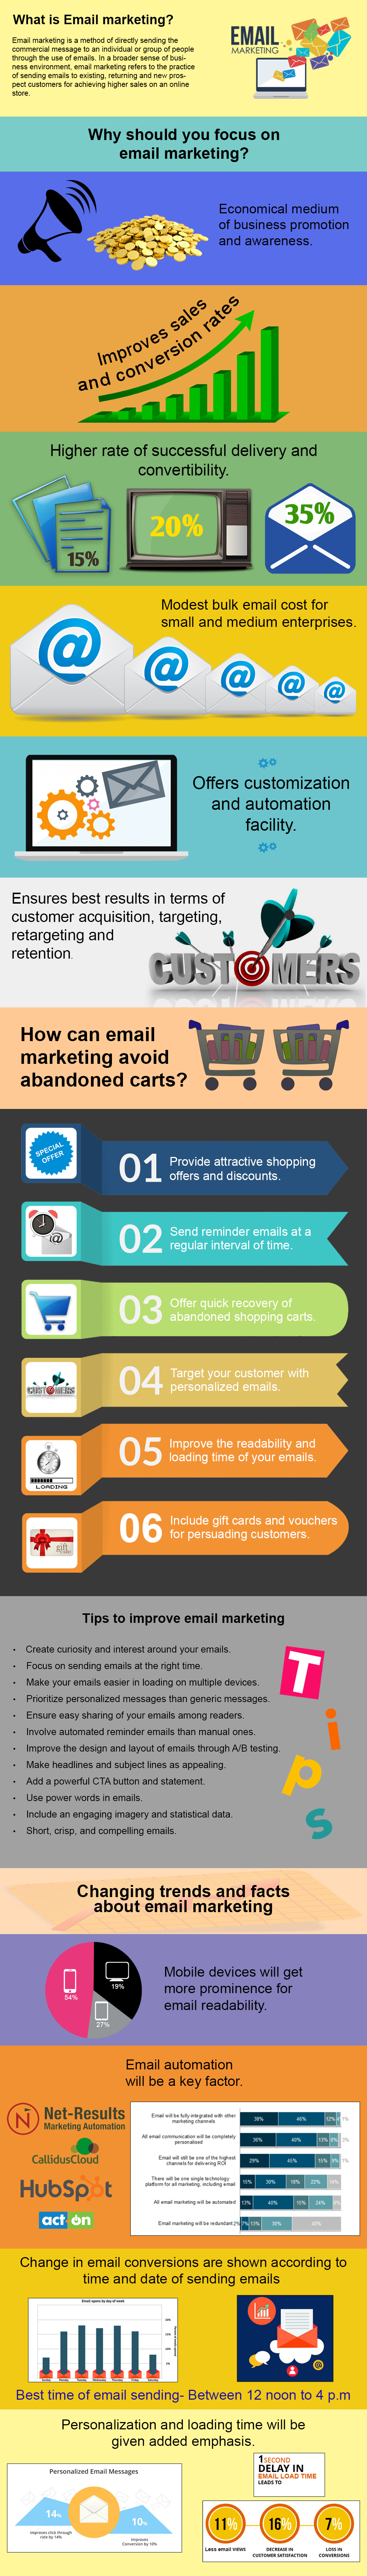 Les conversions de commerce électronique par e-mail marketing |  knowband